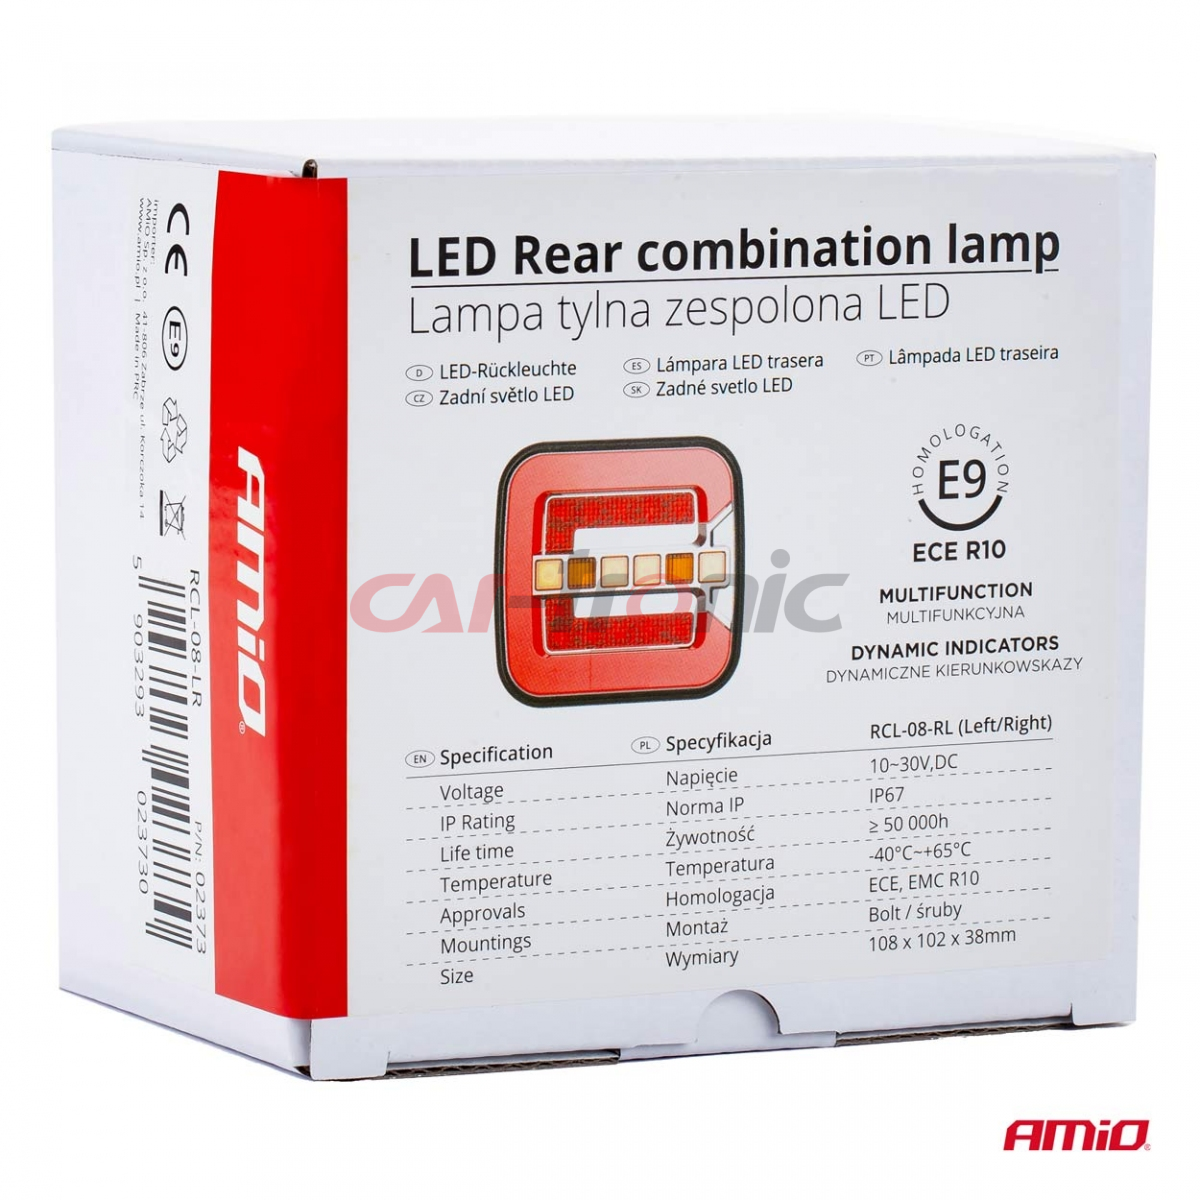 Lampa tylna zespolona LED RCL-08-LR dynamiczna lewa prawa AMIO-02373